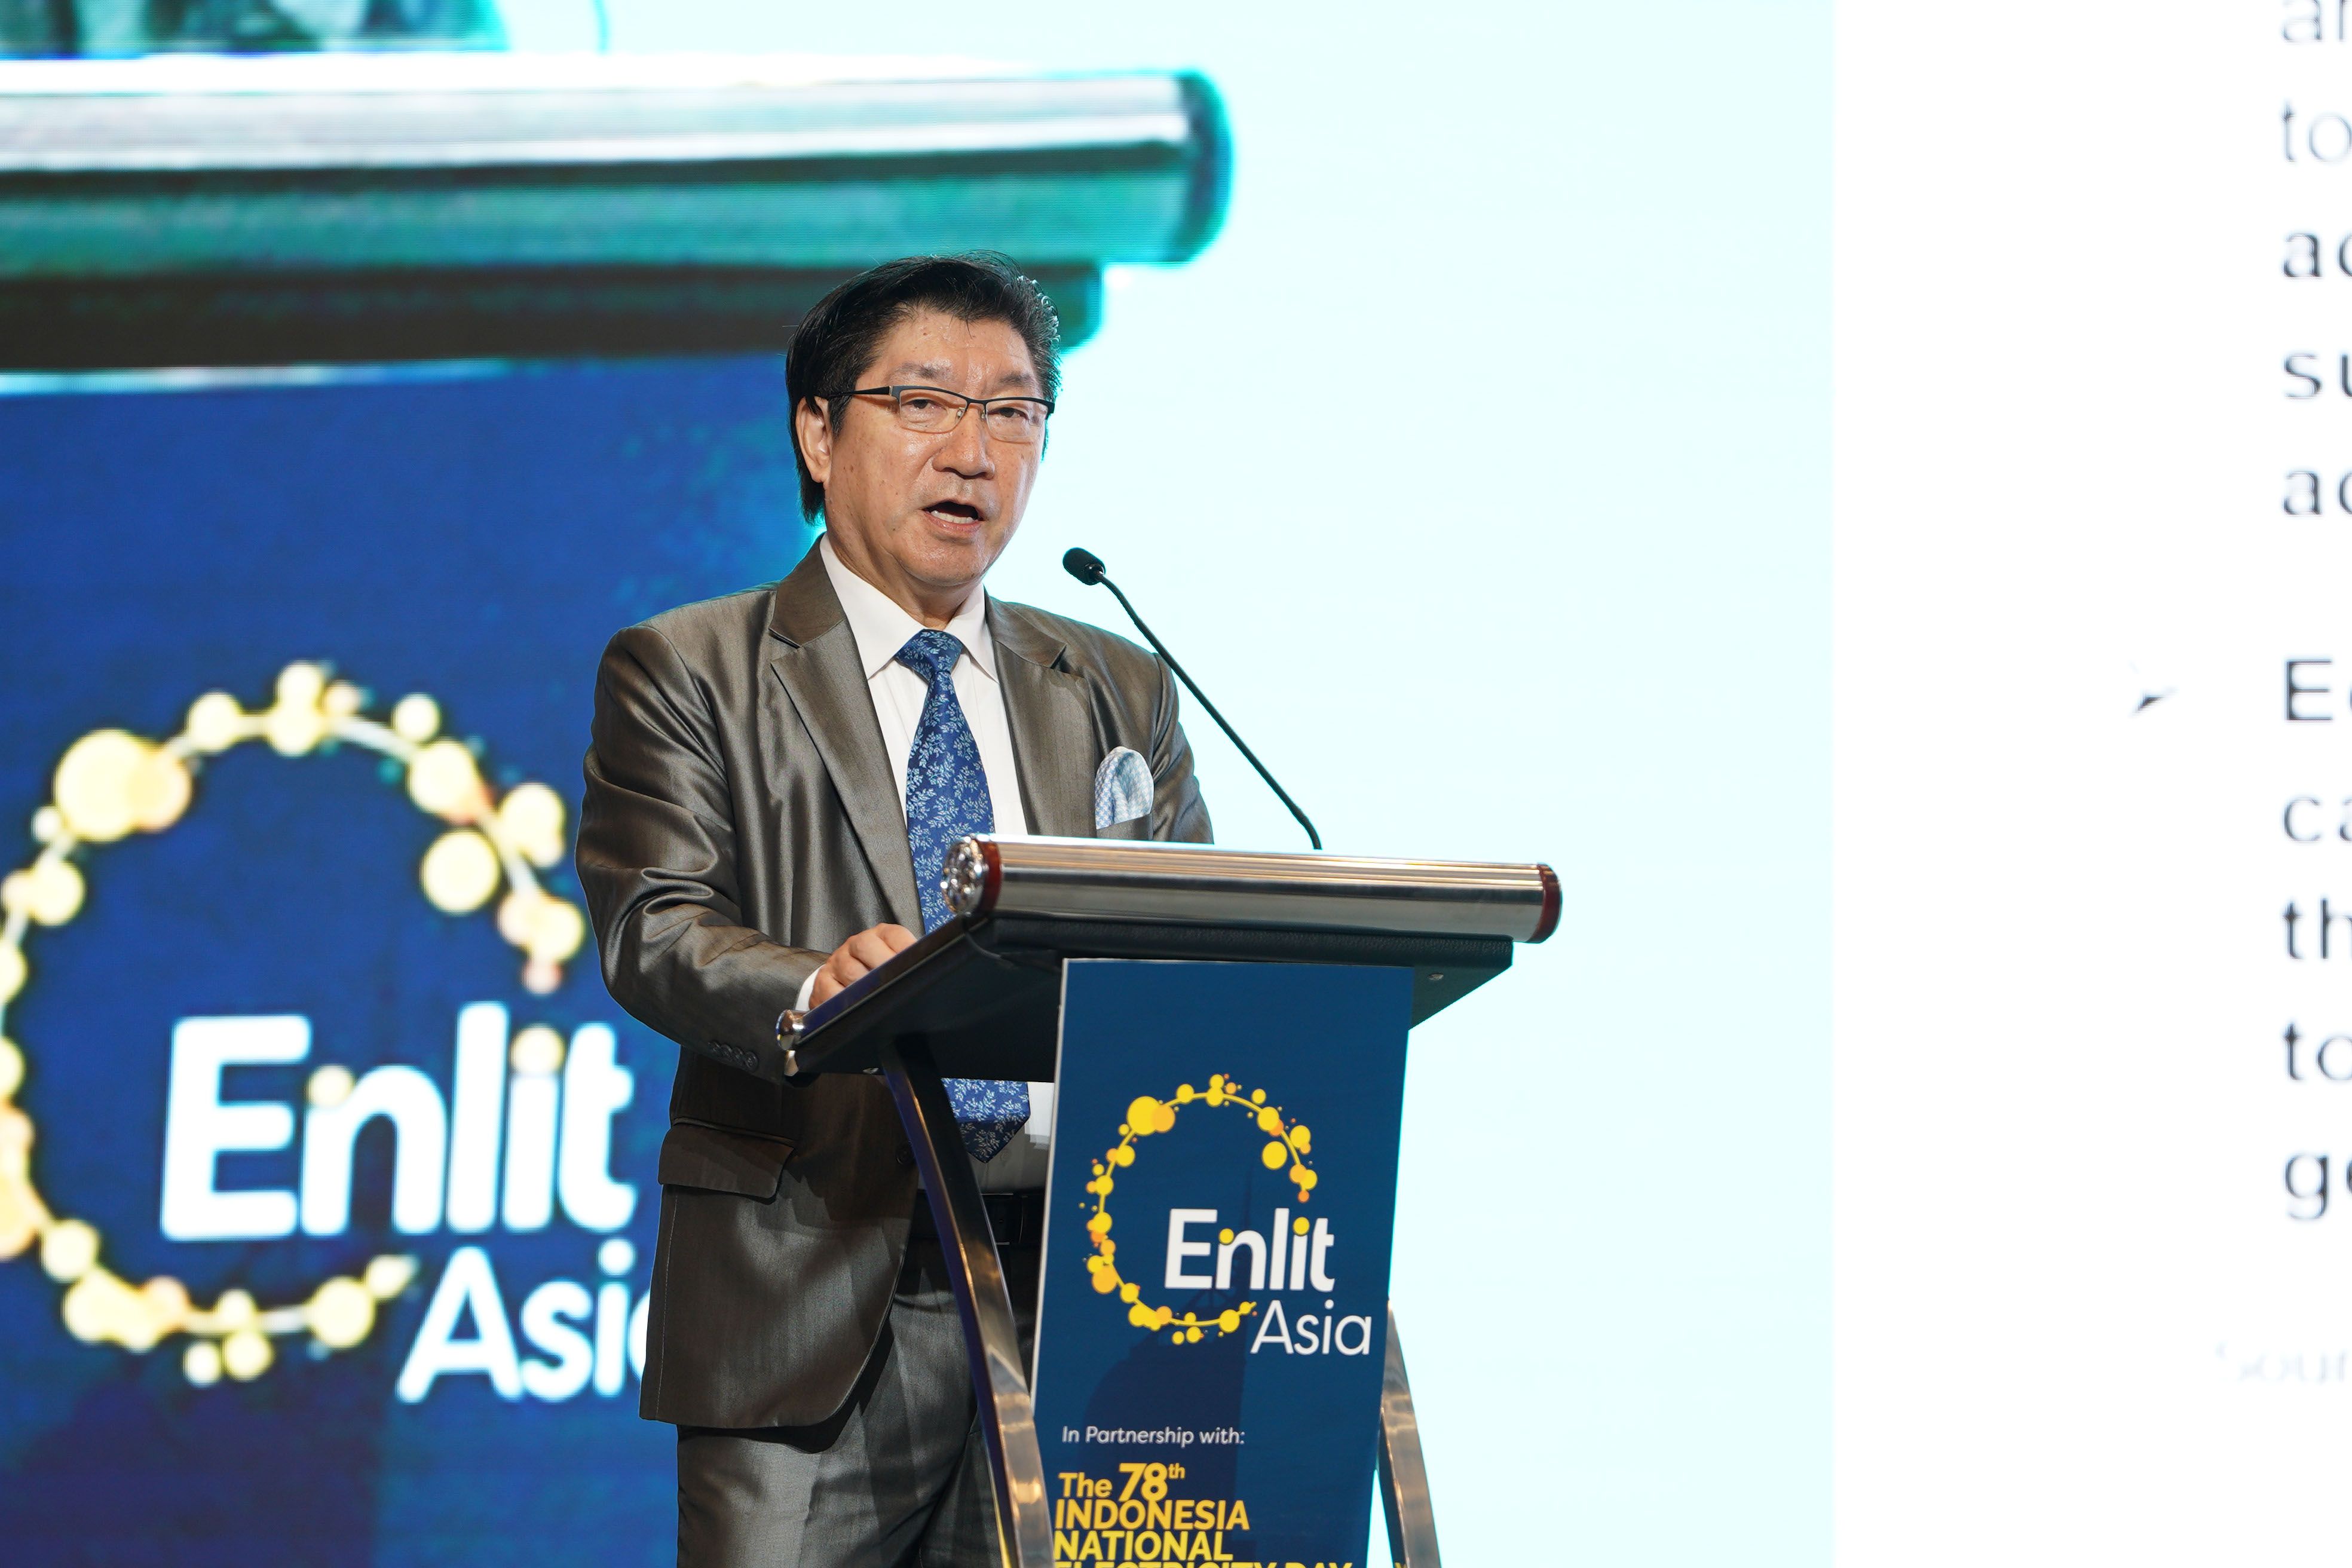 Sponsorship Opportunities at Enlit Asia